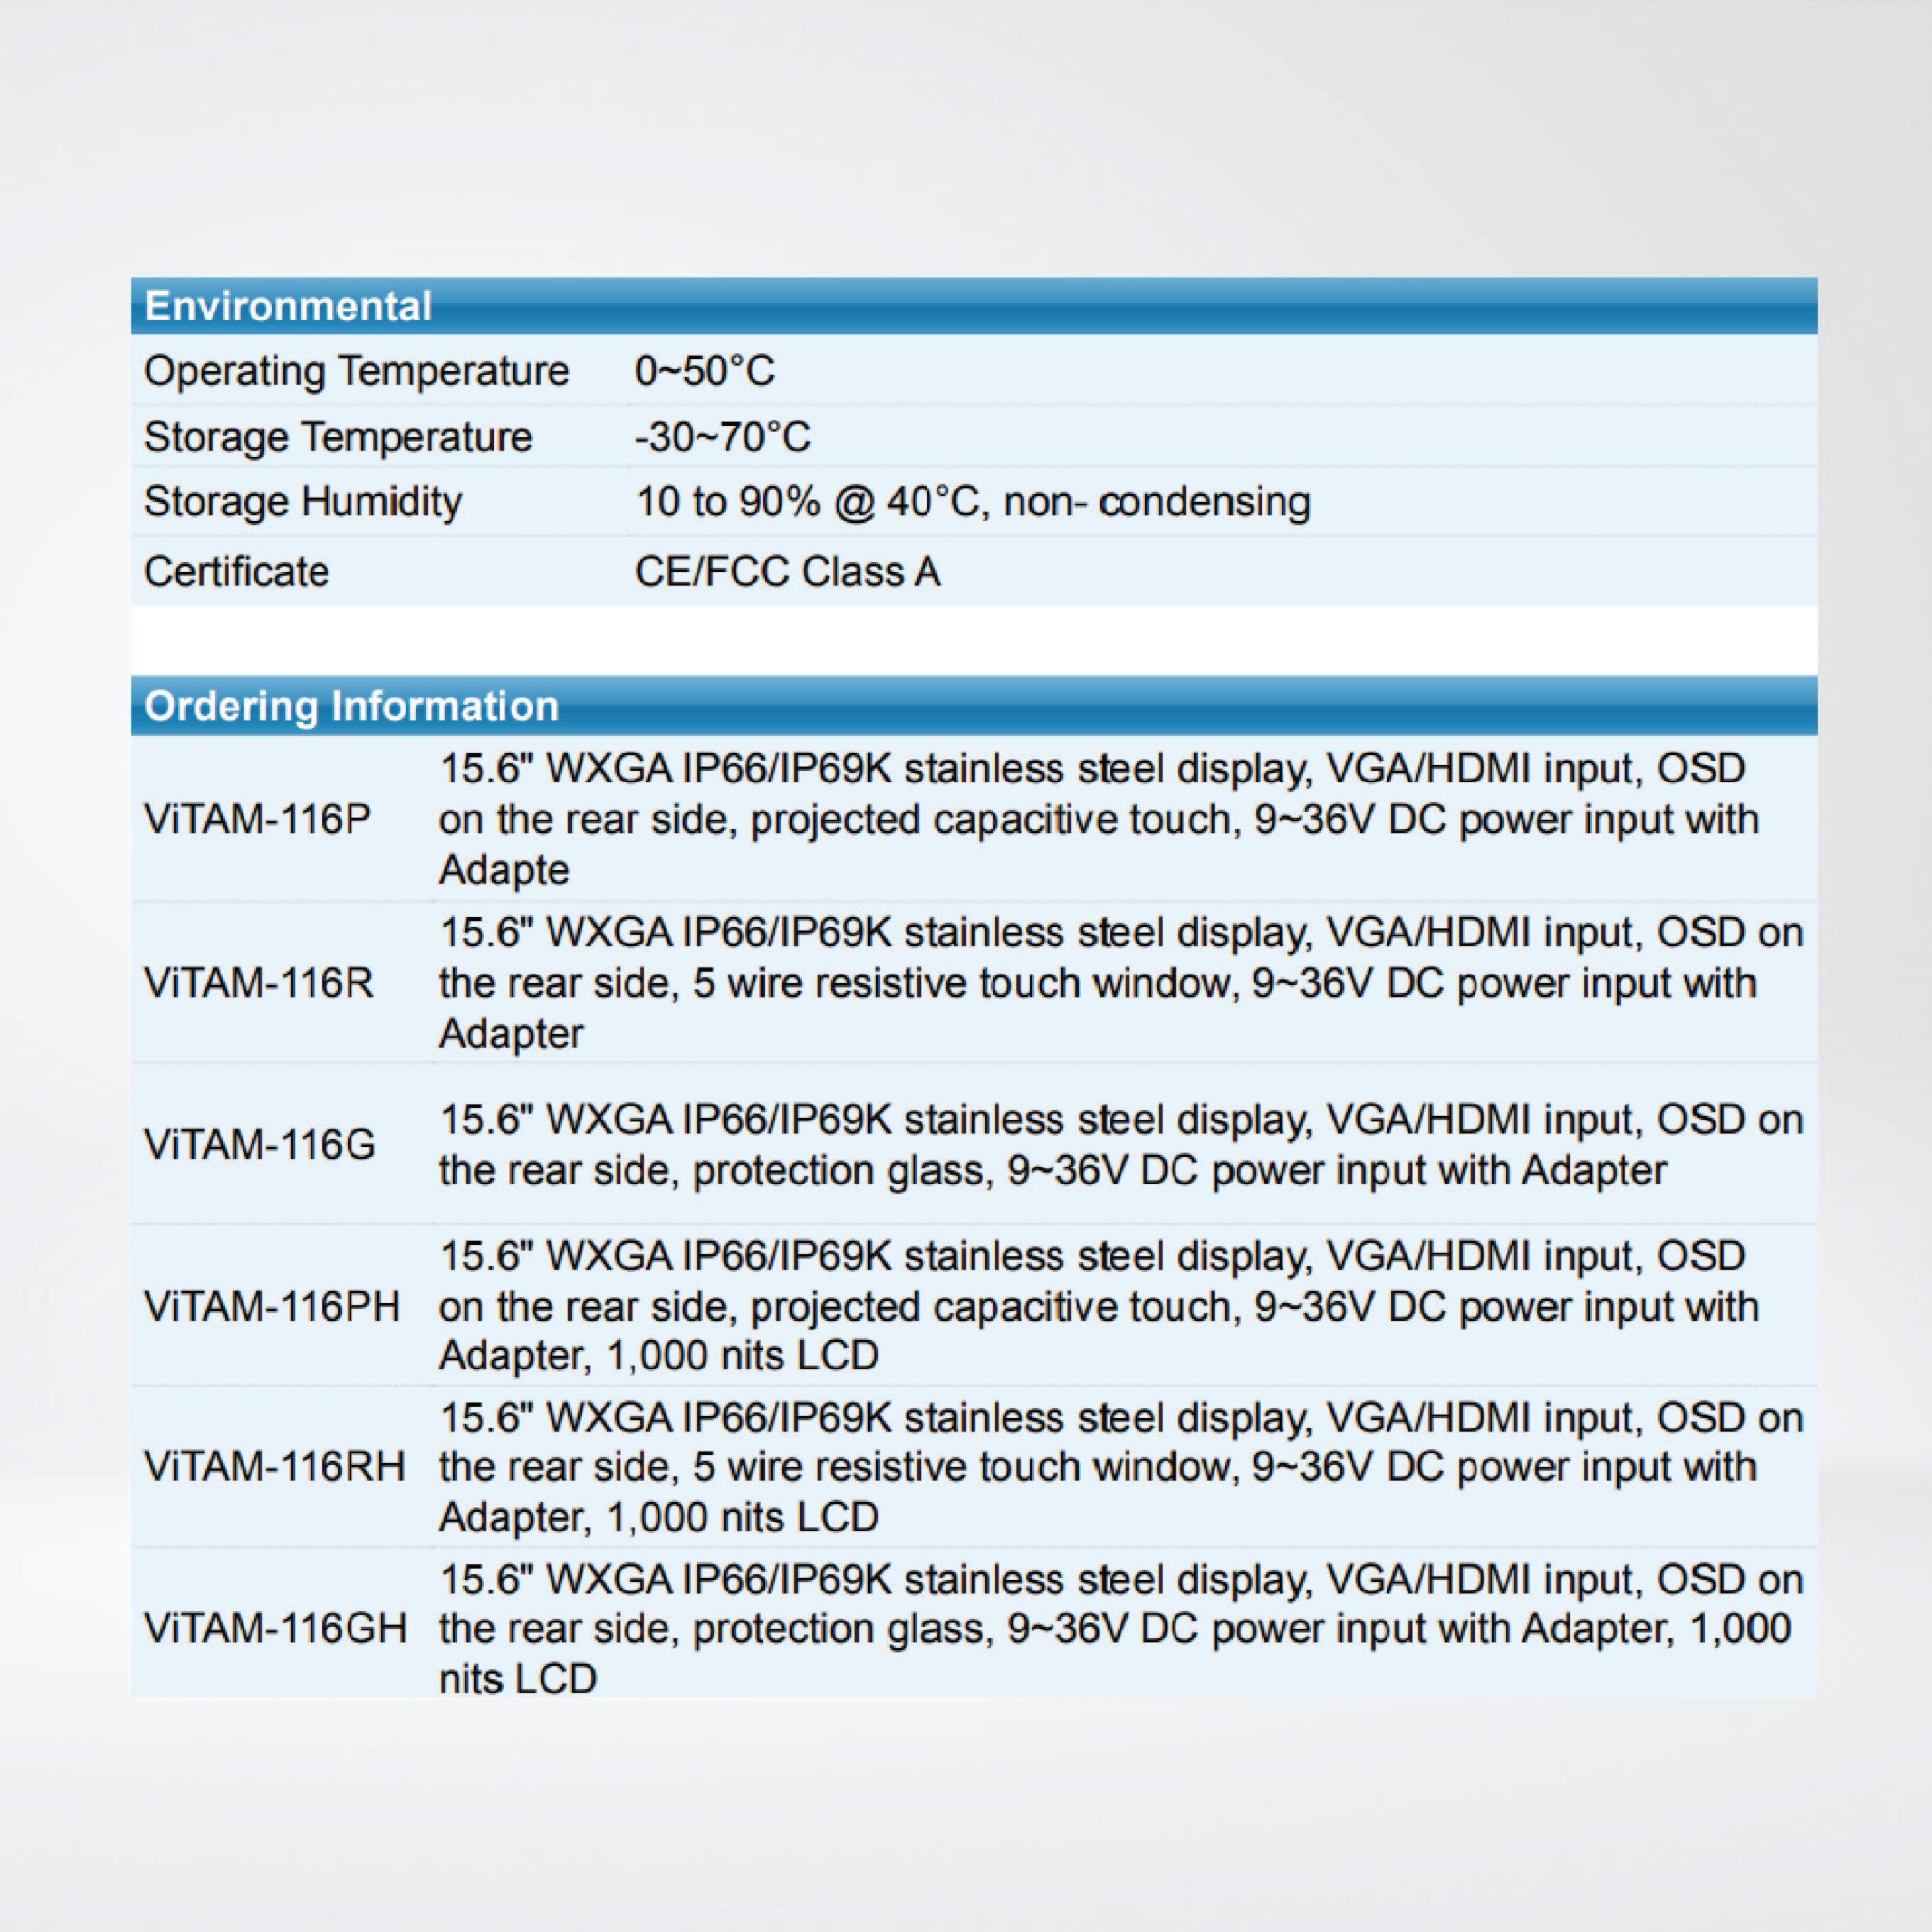 ViTAM-116GH 15.6″ New Gen. IP66/IP69K Stainless Steel Display - Riverplus